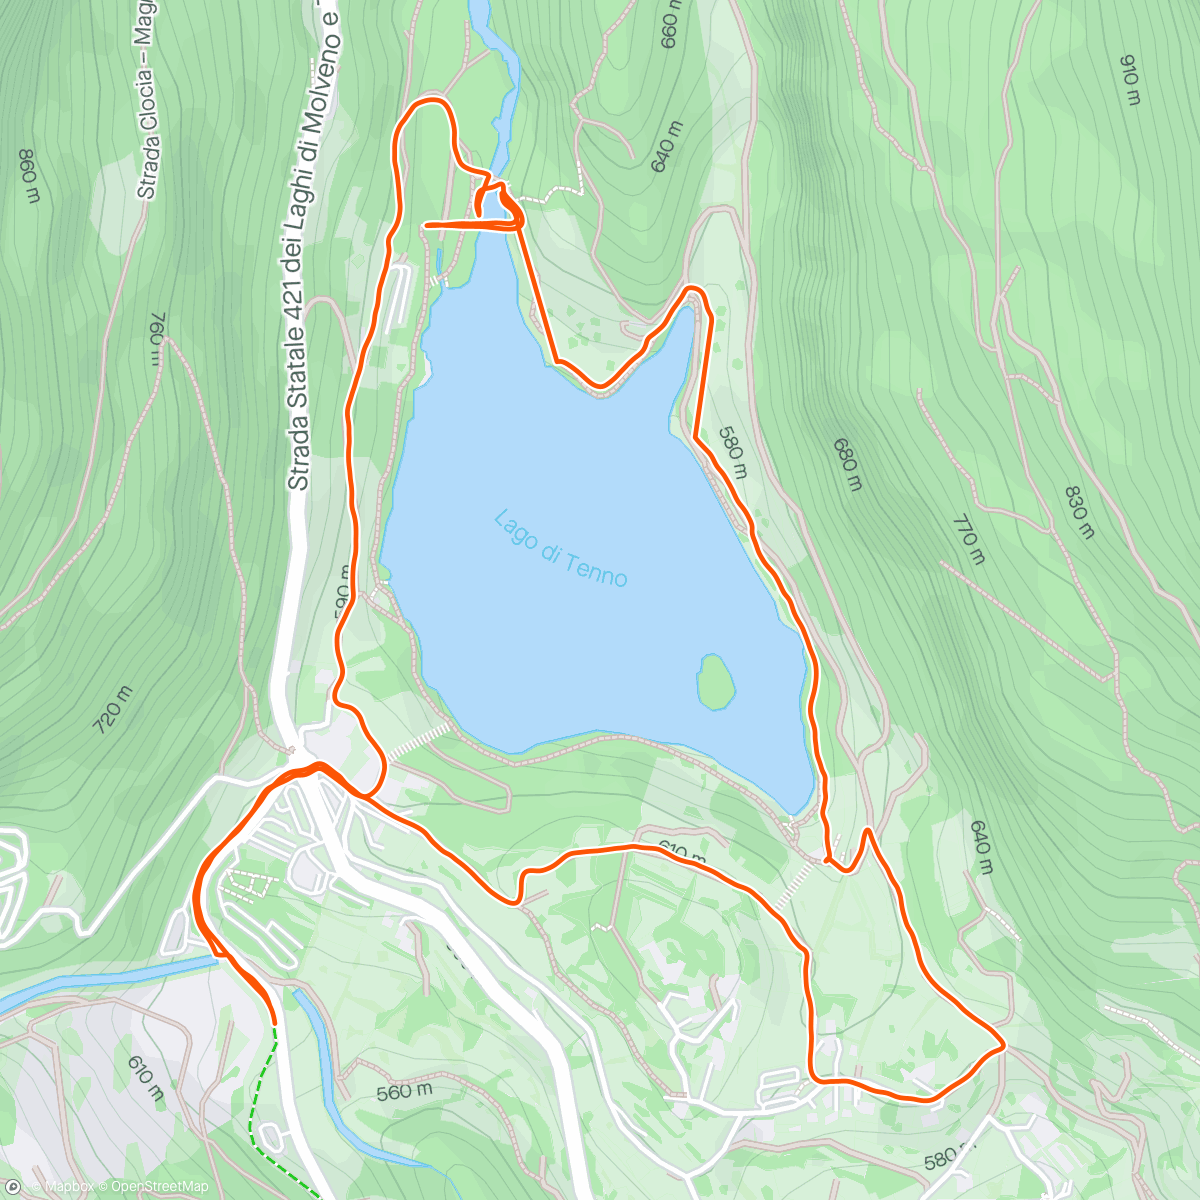 Mapa de la actividad, Lago di Tenno